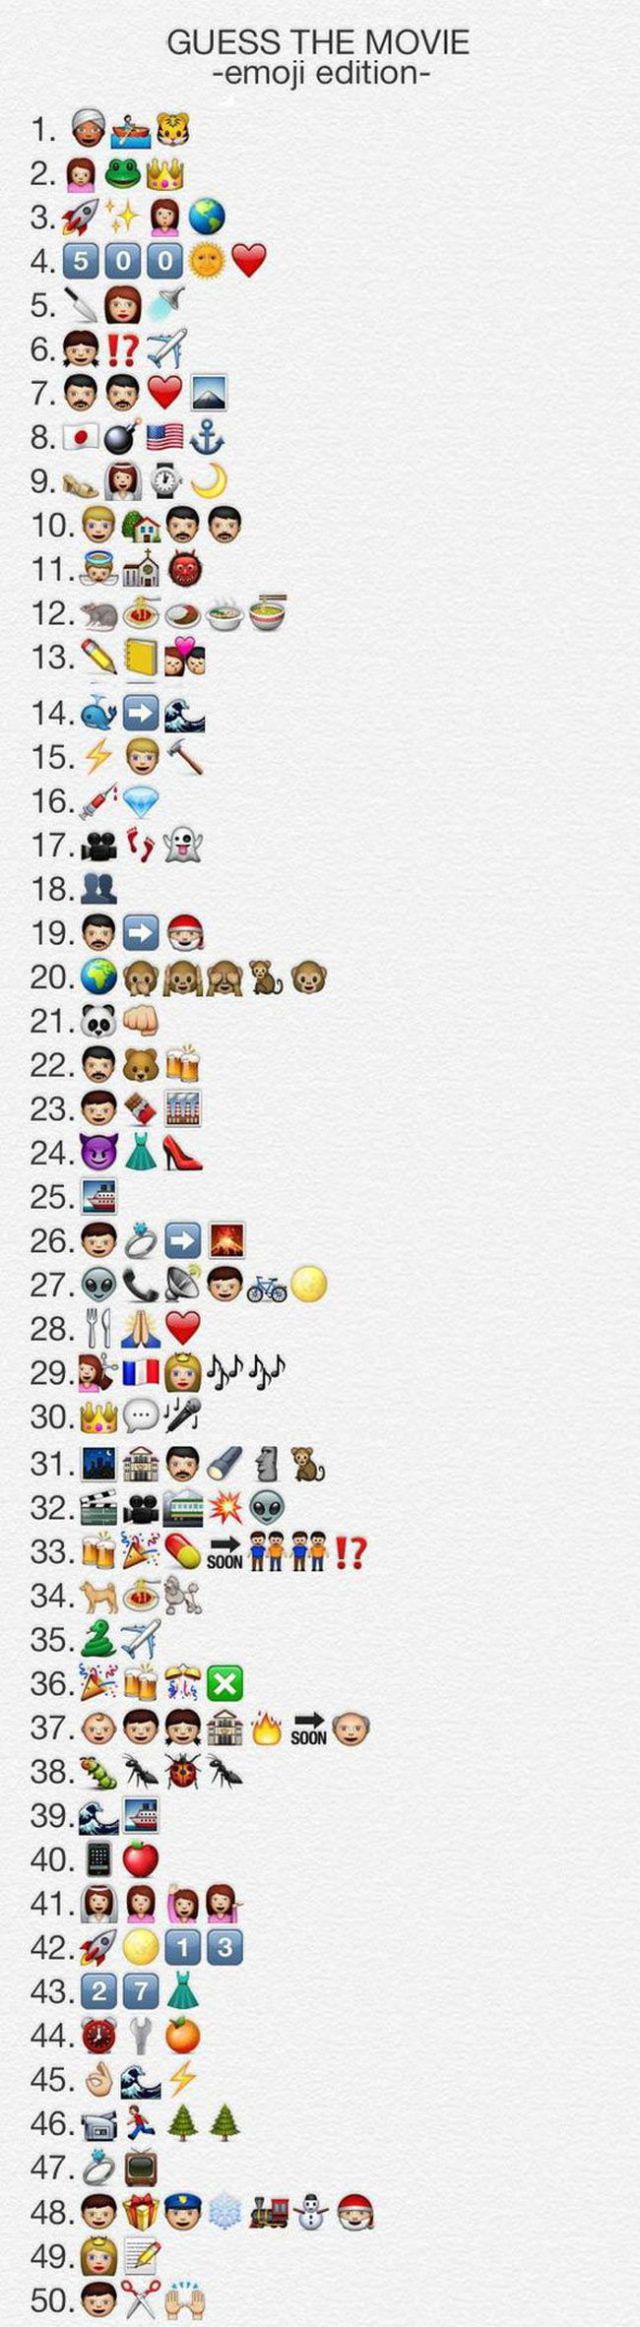 Emoji Interpretations of 50 Movies